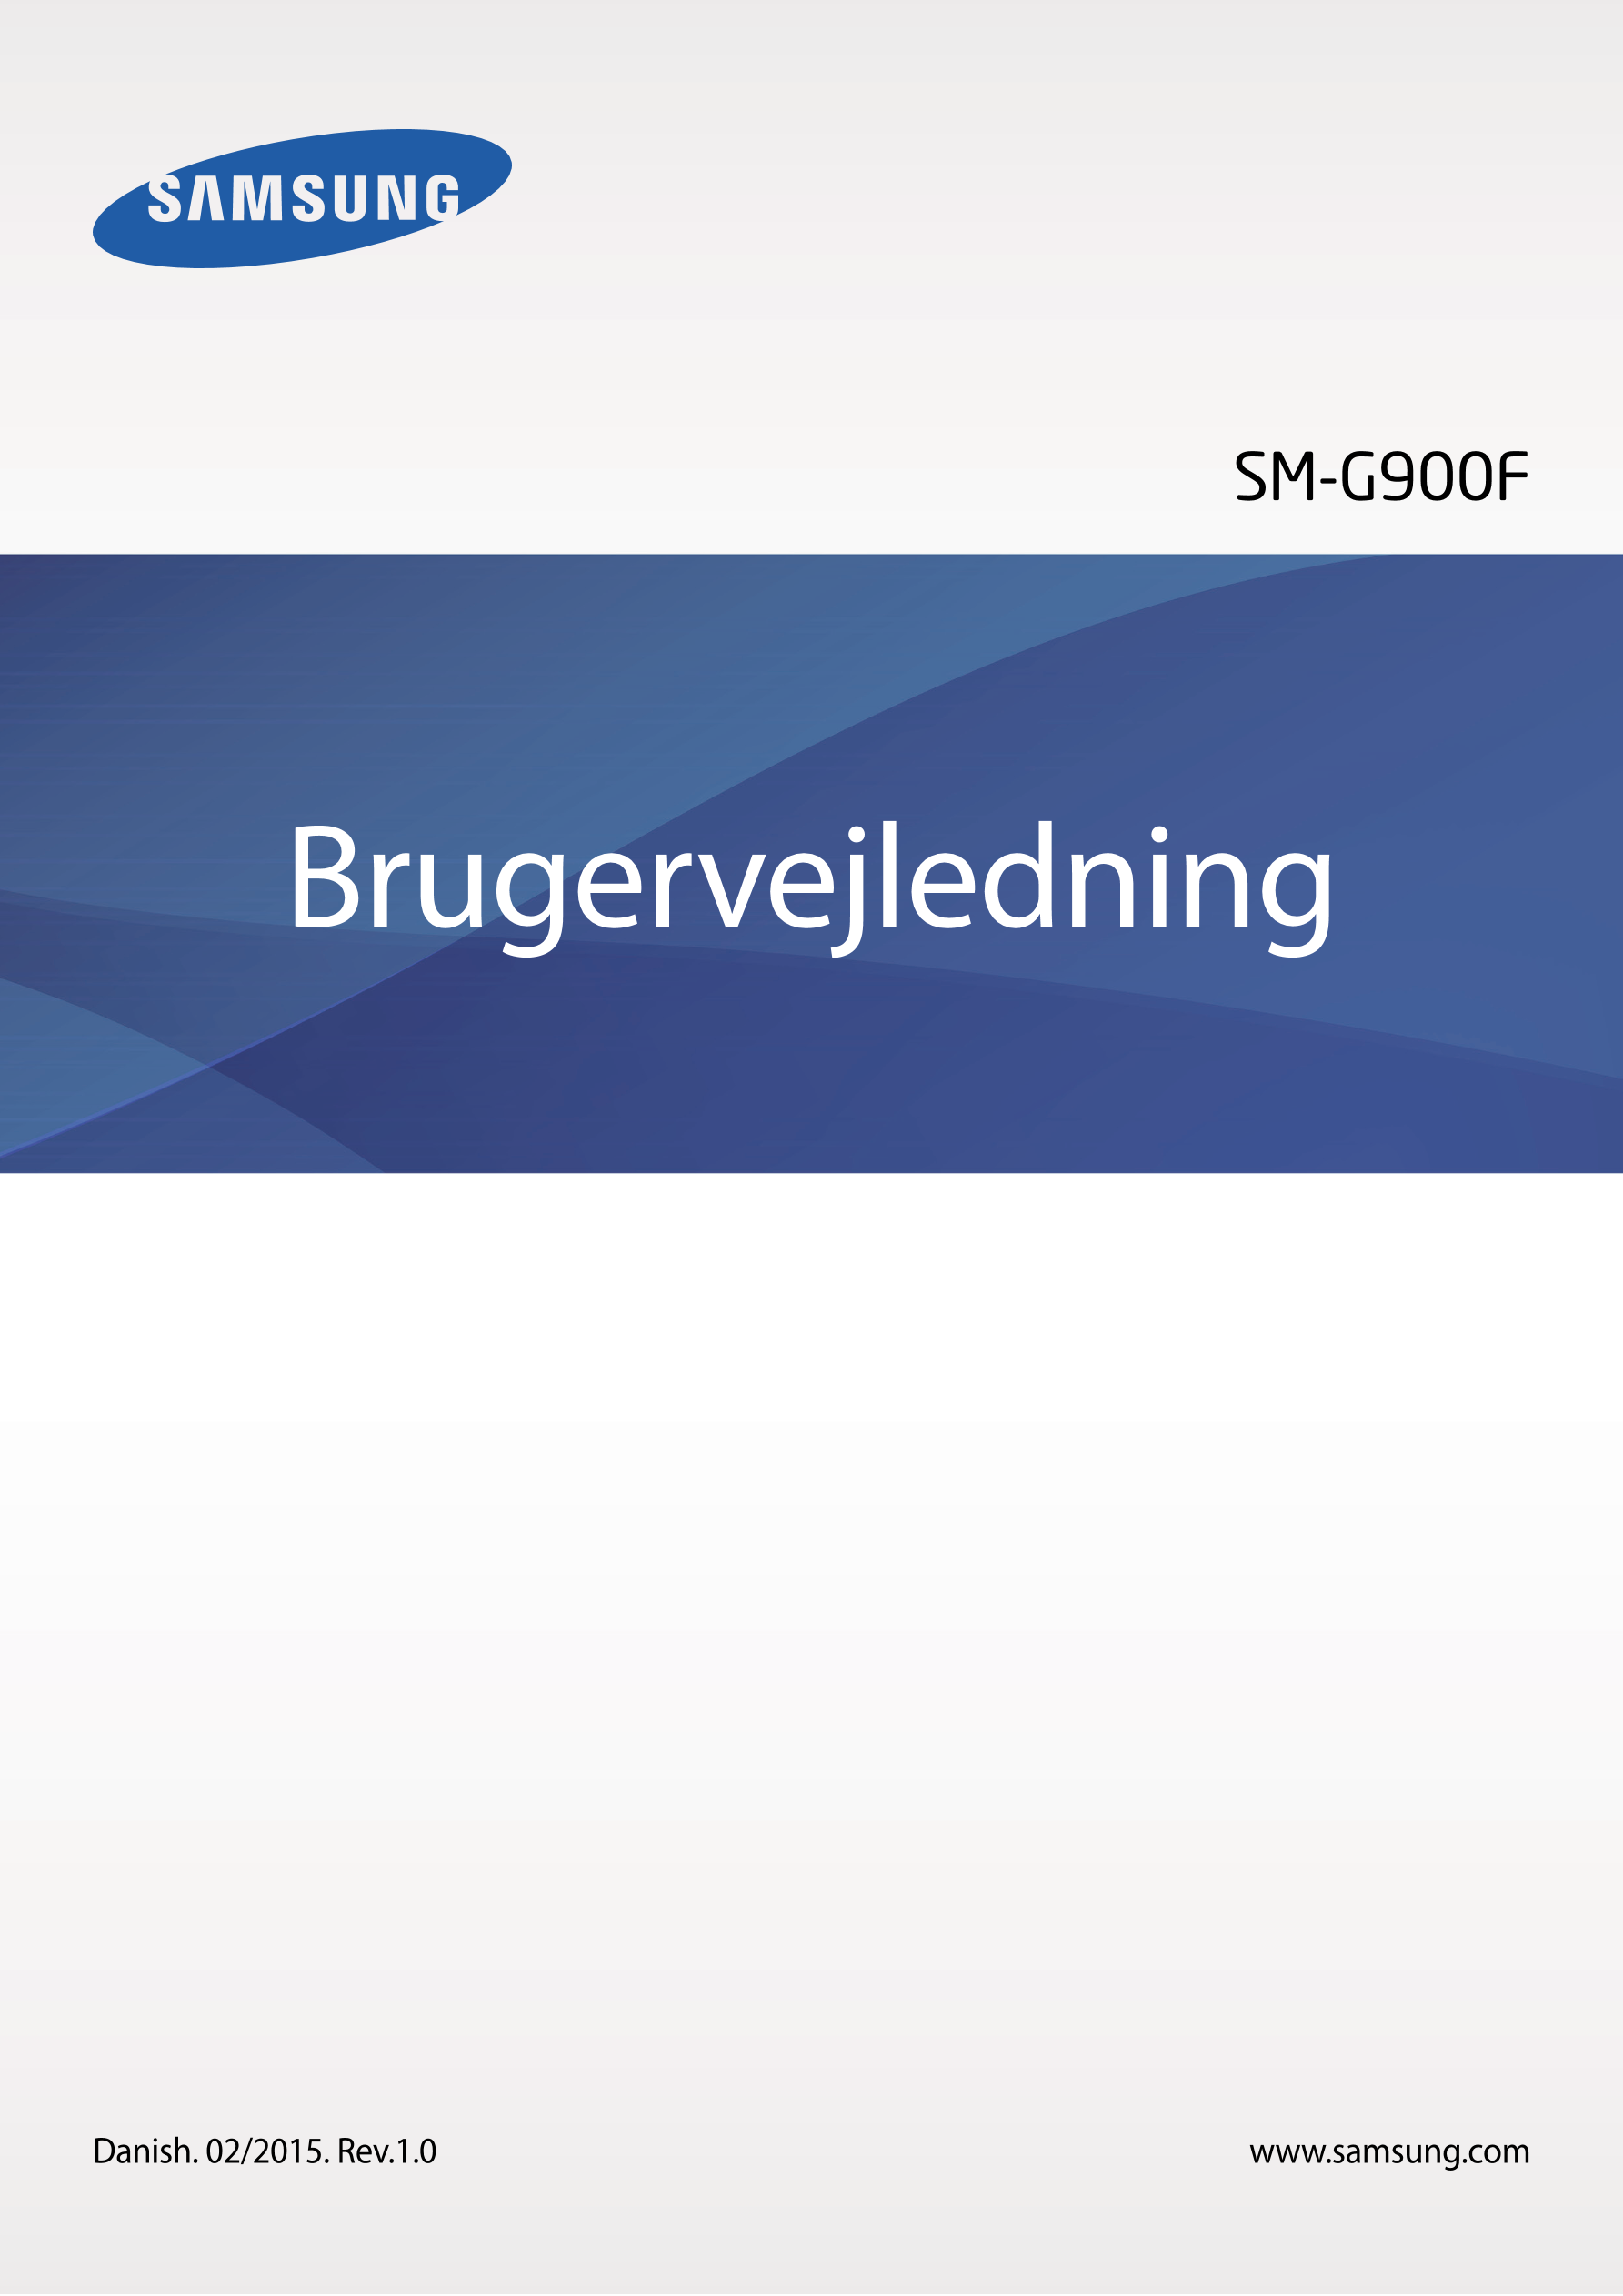 SM-G900F
Brugervejledning
Danish. 02/2015. Rev.1.0 www.samsung.com